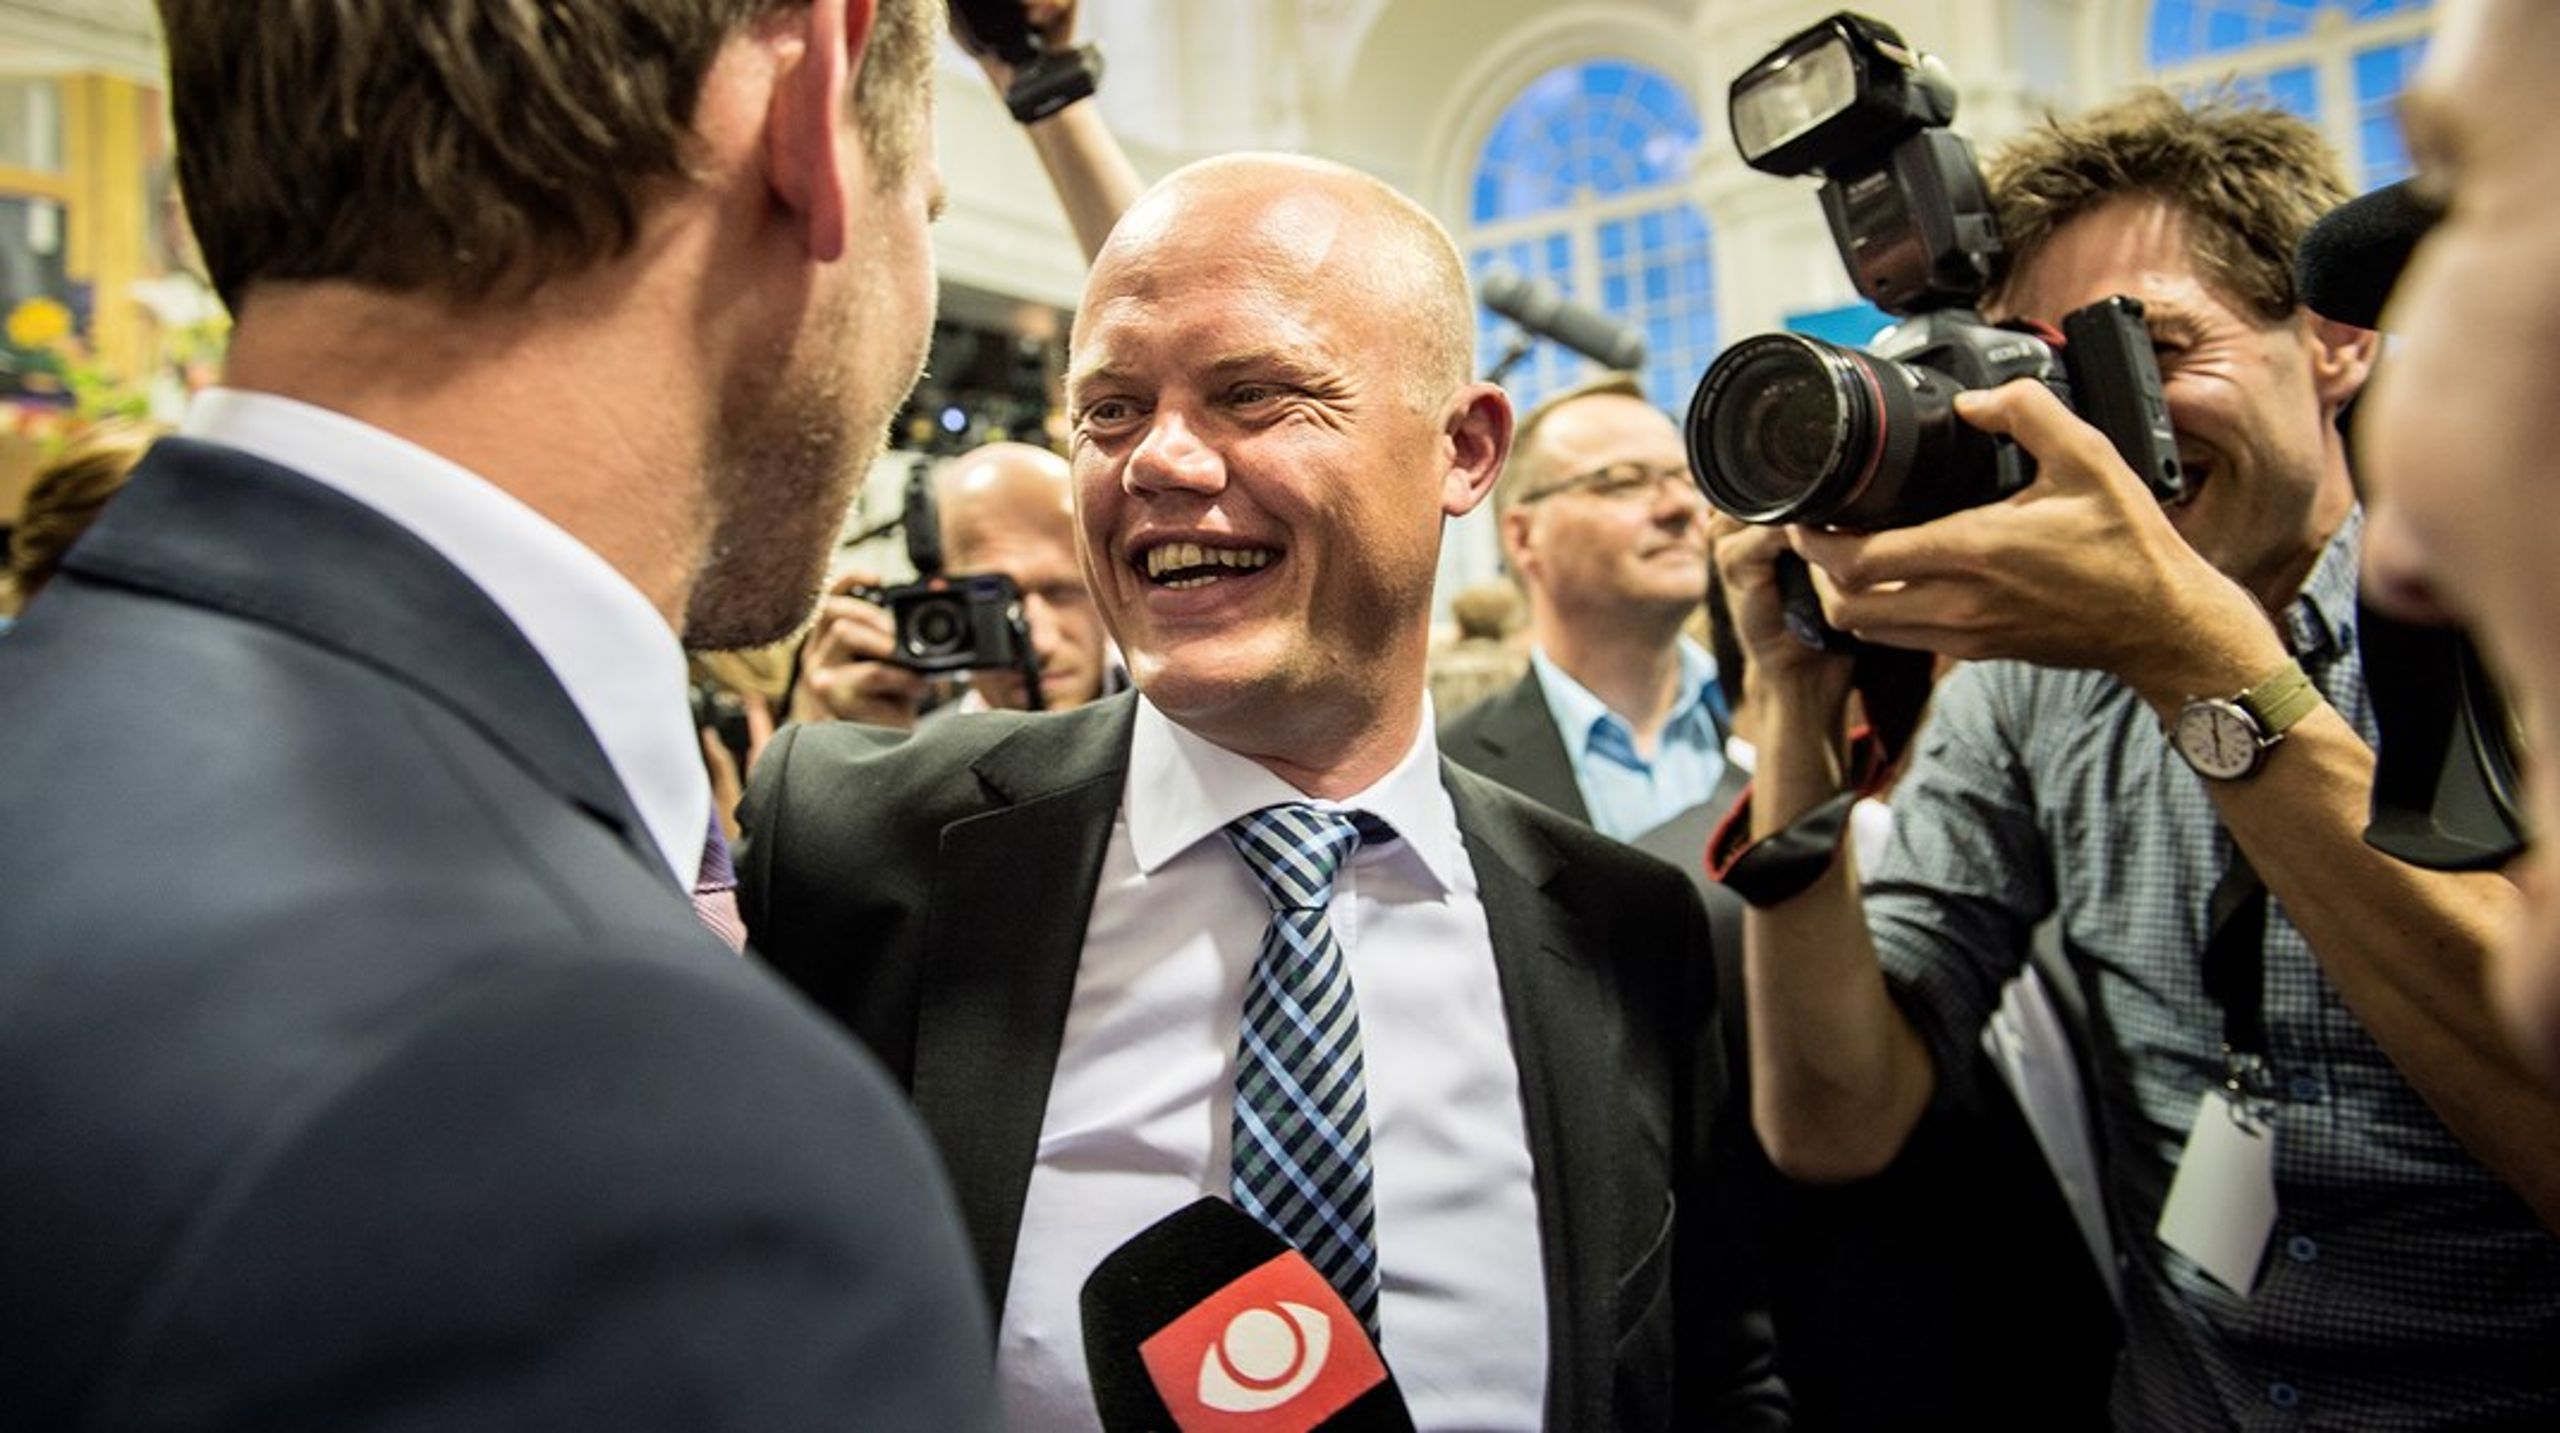 Forhenværende minister og medlem af Venstre, Peter Christensen, tager snart hul på et nyt arbejdskapitel som direktør for Aktive Ejere.